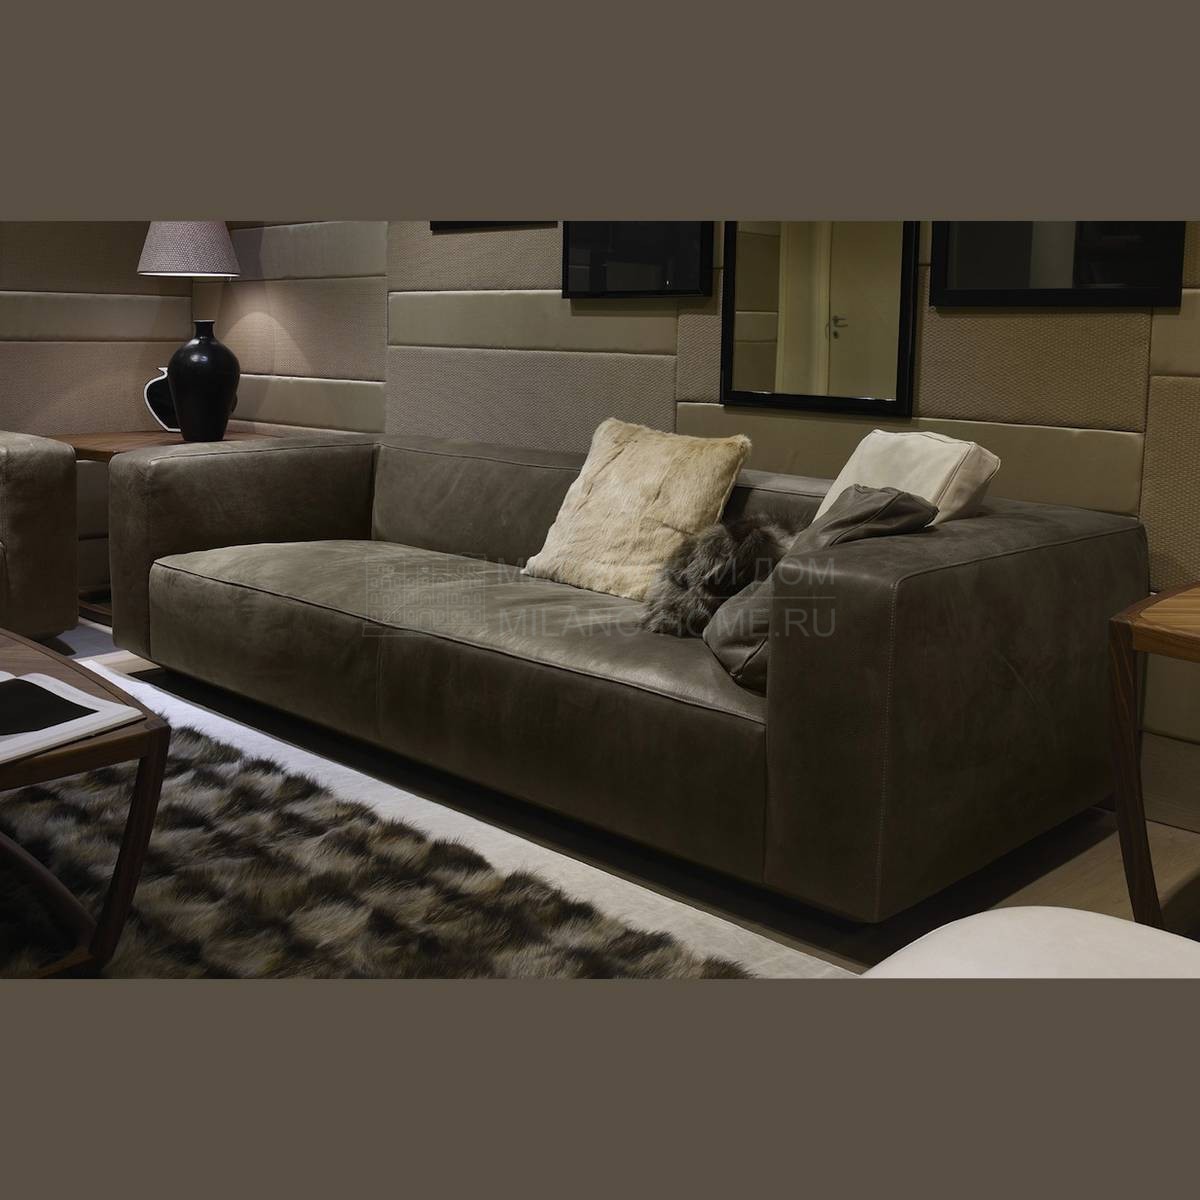 Прямой диван Boss Sofa из Италии фабрики ULIVI